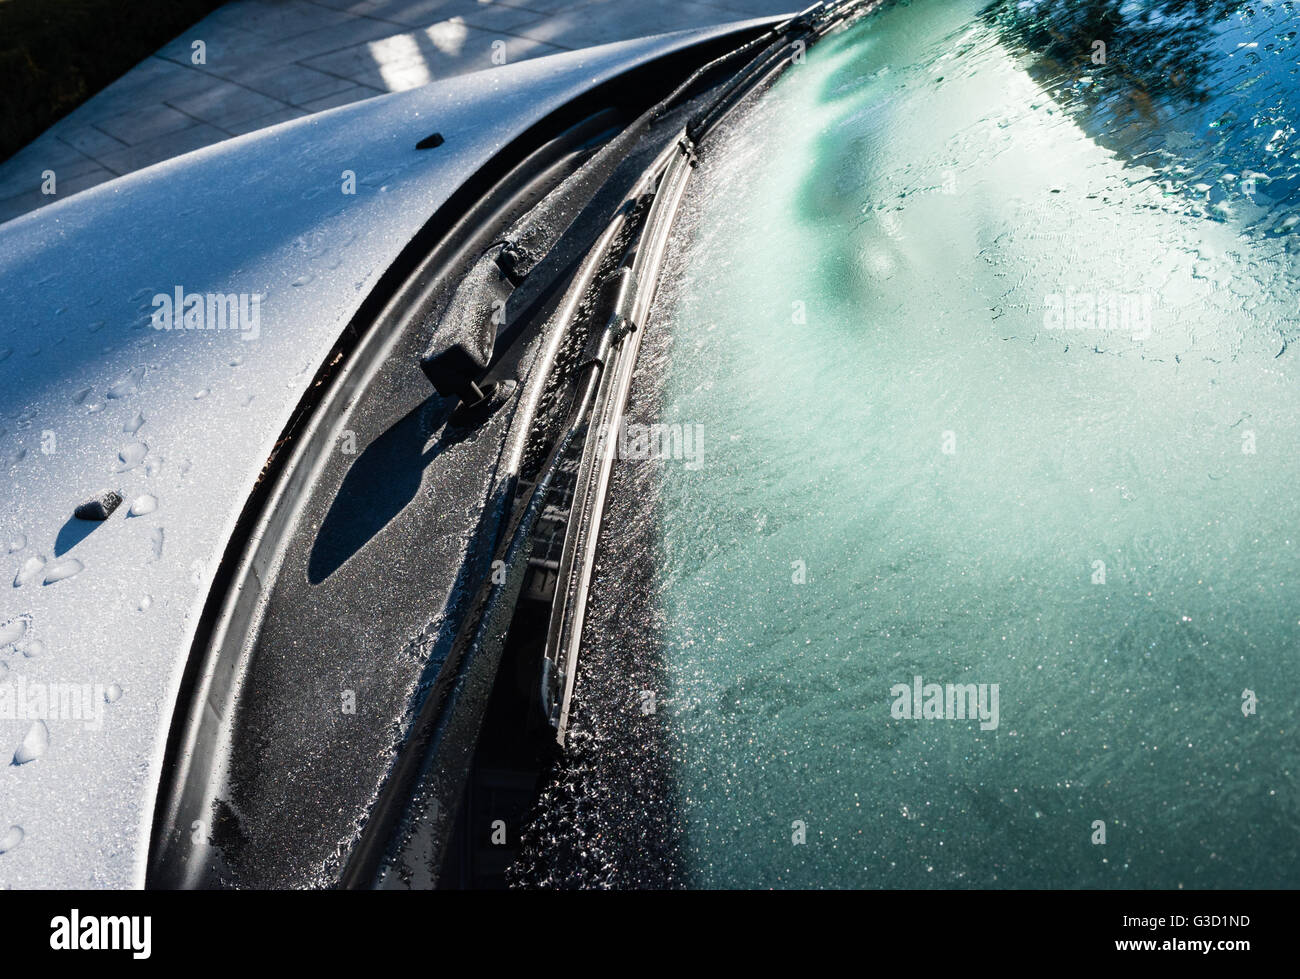 Pare-brise et les essuie-glaces de voiture givrée en hiver, commençant à fondre, et partiellement ombragée un capot de voiture. Banque D'Images